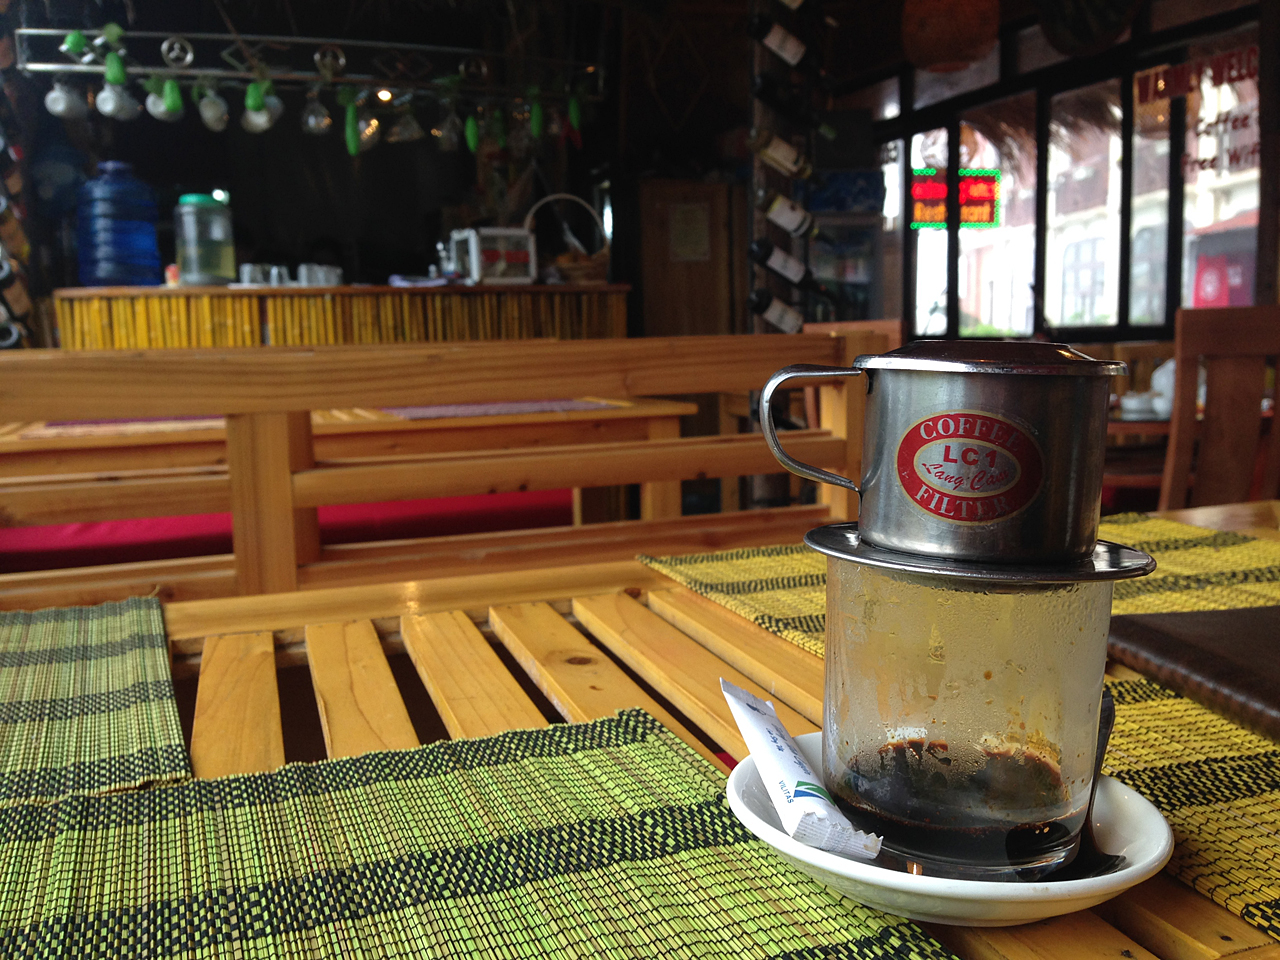  베트남 사파 식당에서 마신 핀드립 커피.